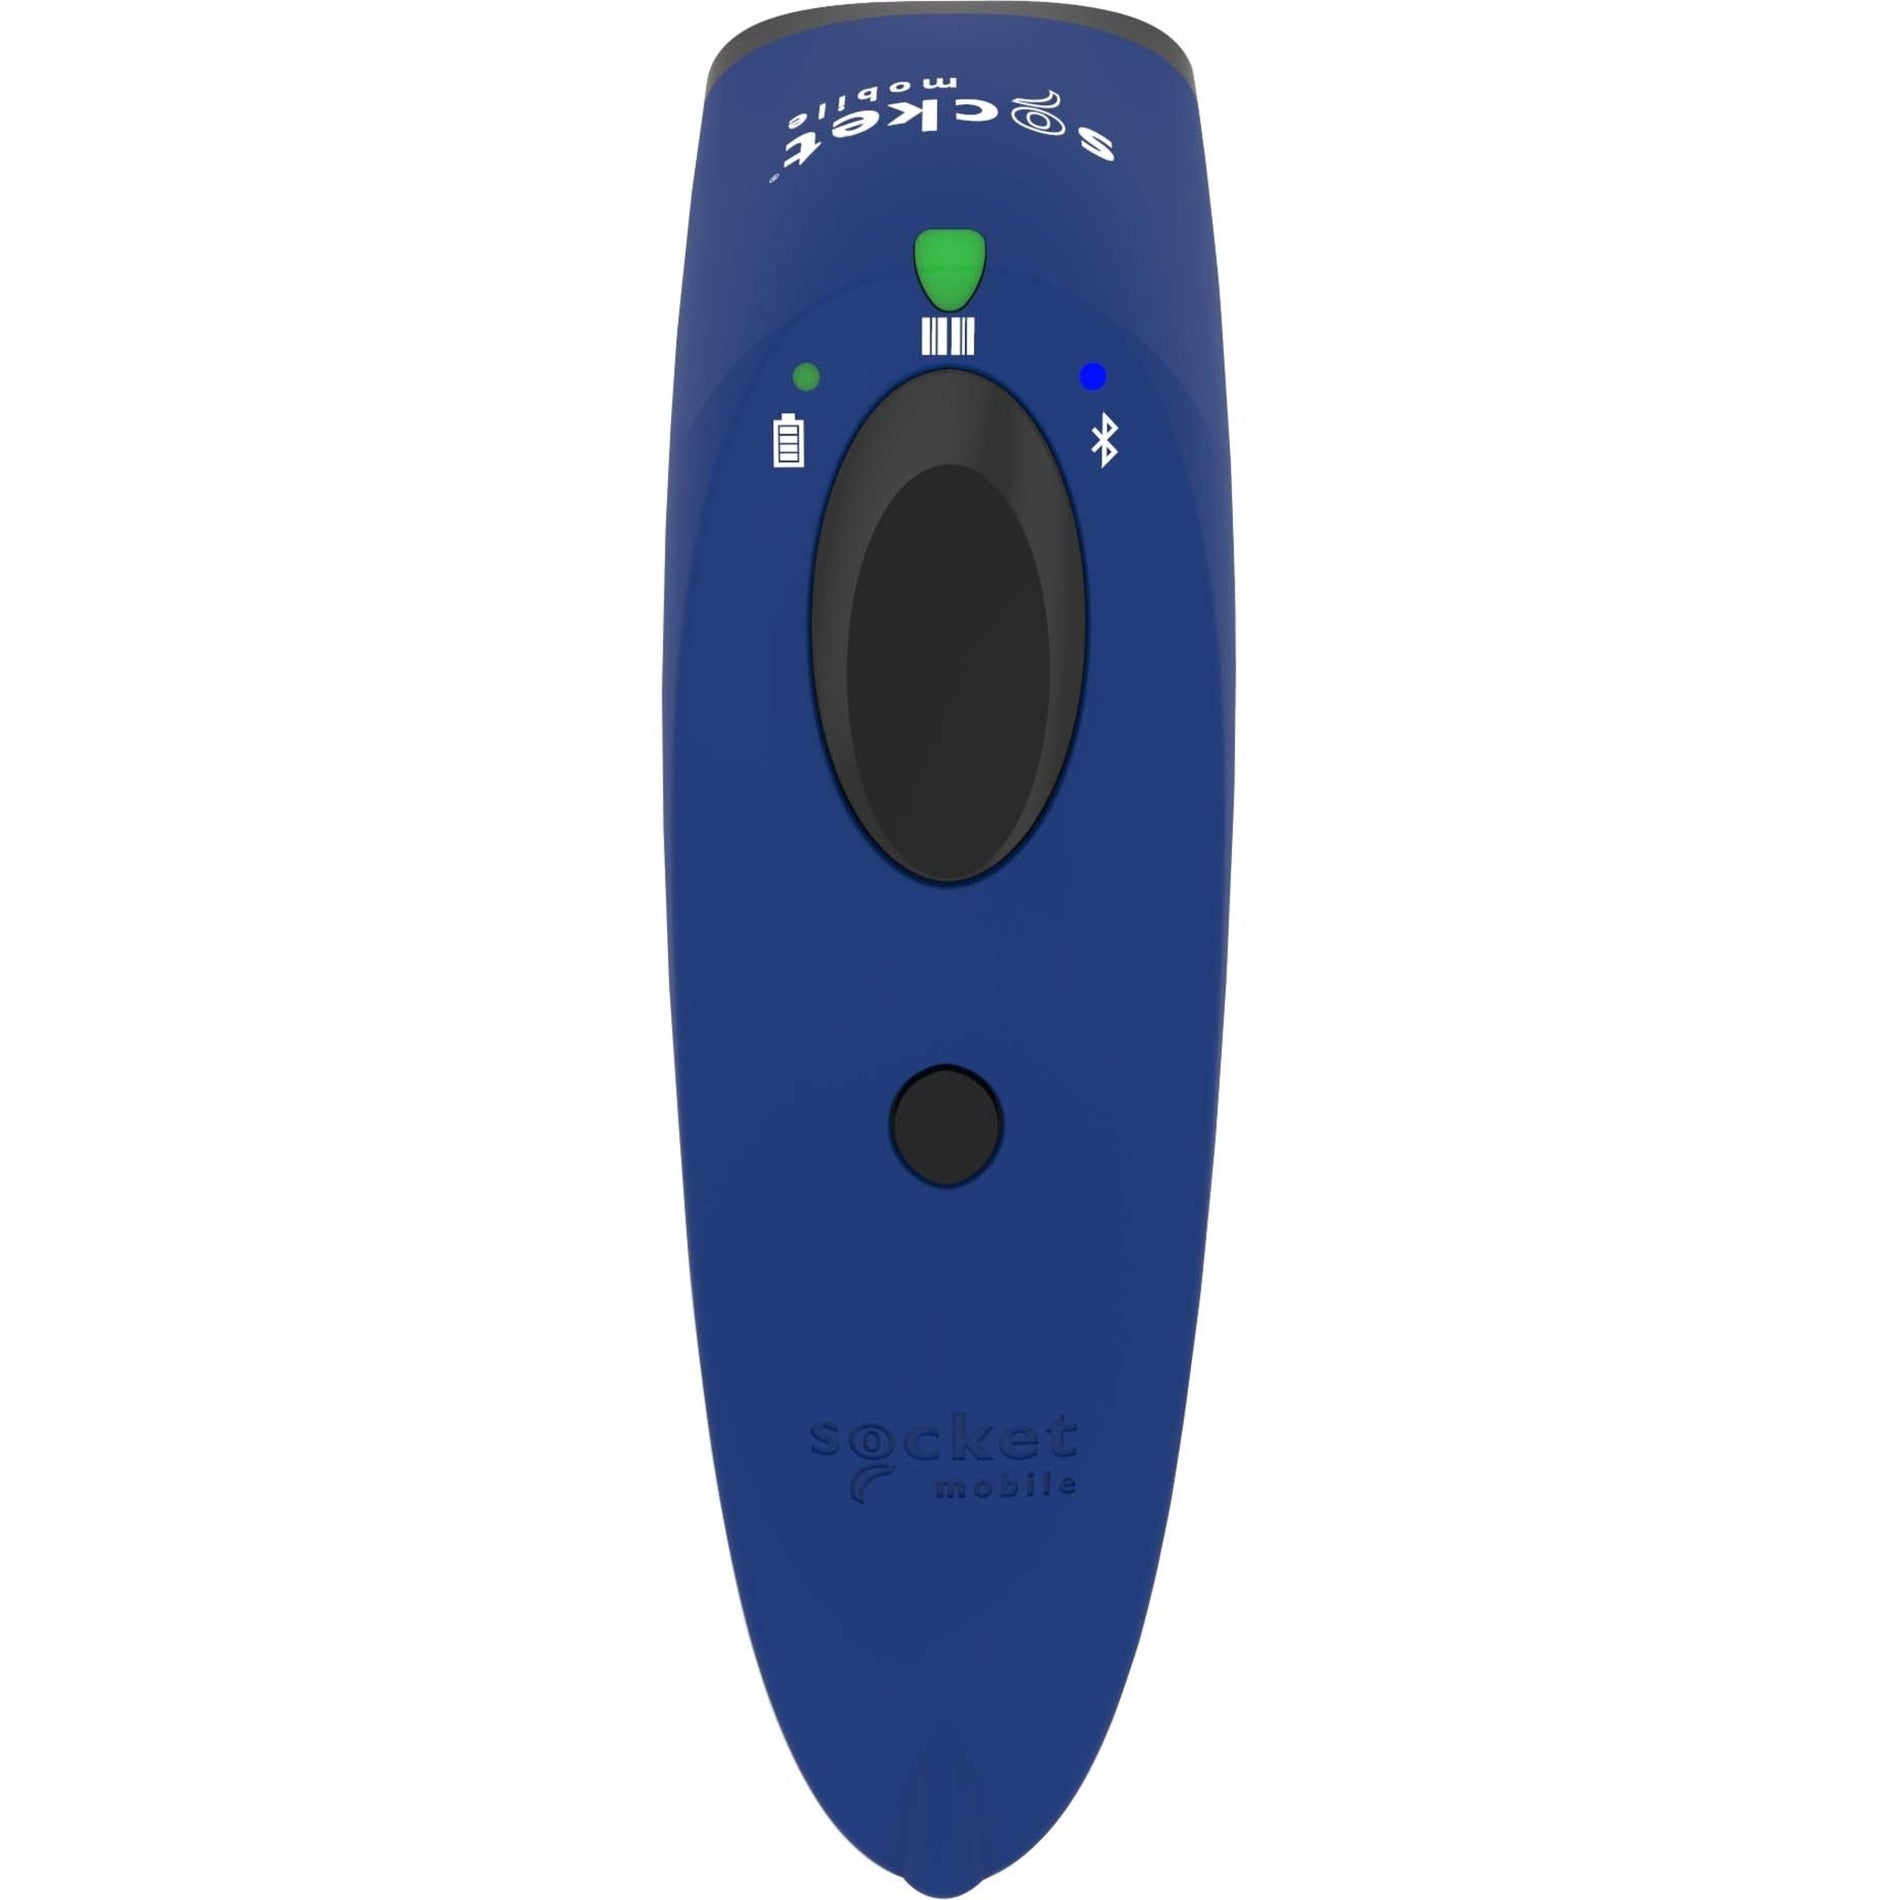 品牌名称: Socket Mobile 扫描仪款式: SocketScan S730 镭射条形码扫描仪 颜色: 蓝色 连接方式: 无线 扫描类型: 1D扫描器